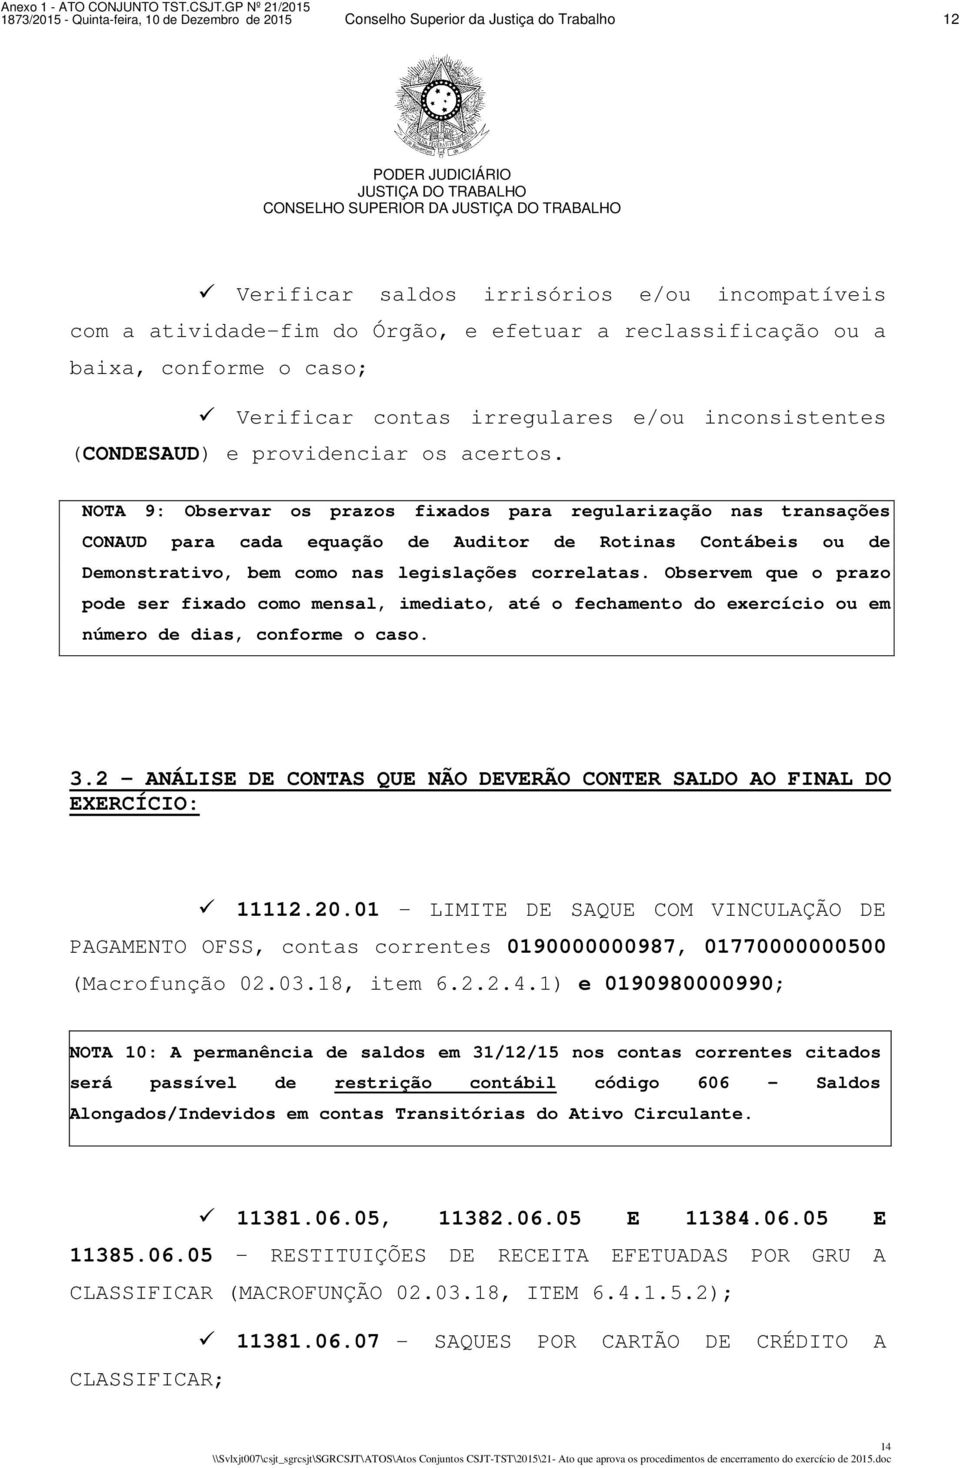 NOTA 9: Observar os prazos fixados para regularização nas transações CONAUD para cada equação de Auditor de Rotinas Contábeis ou de Demonstrativo, bem como nas legislações correlatas.